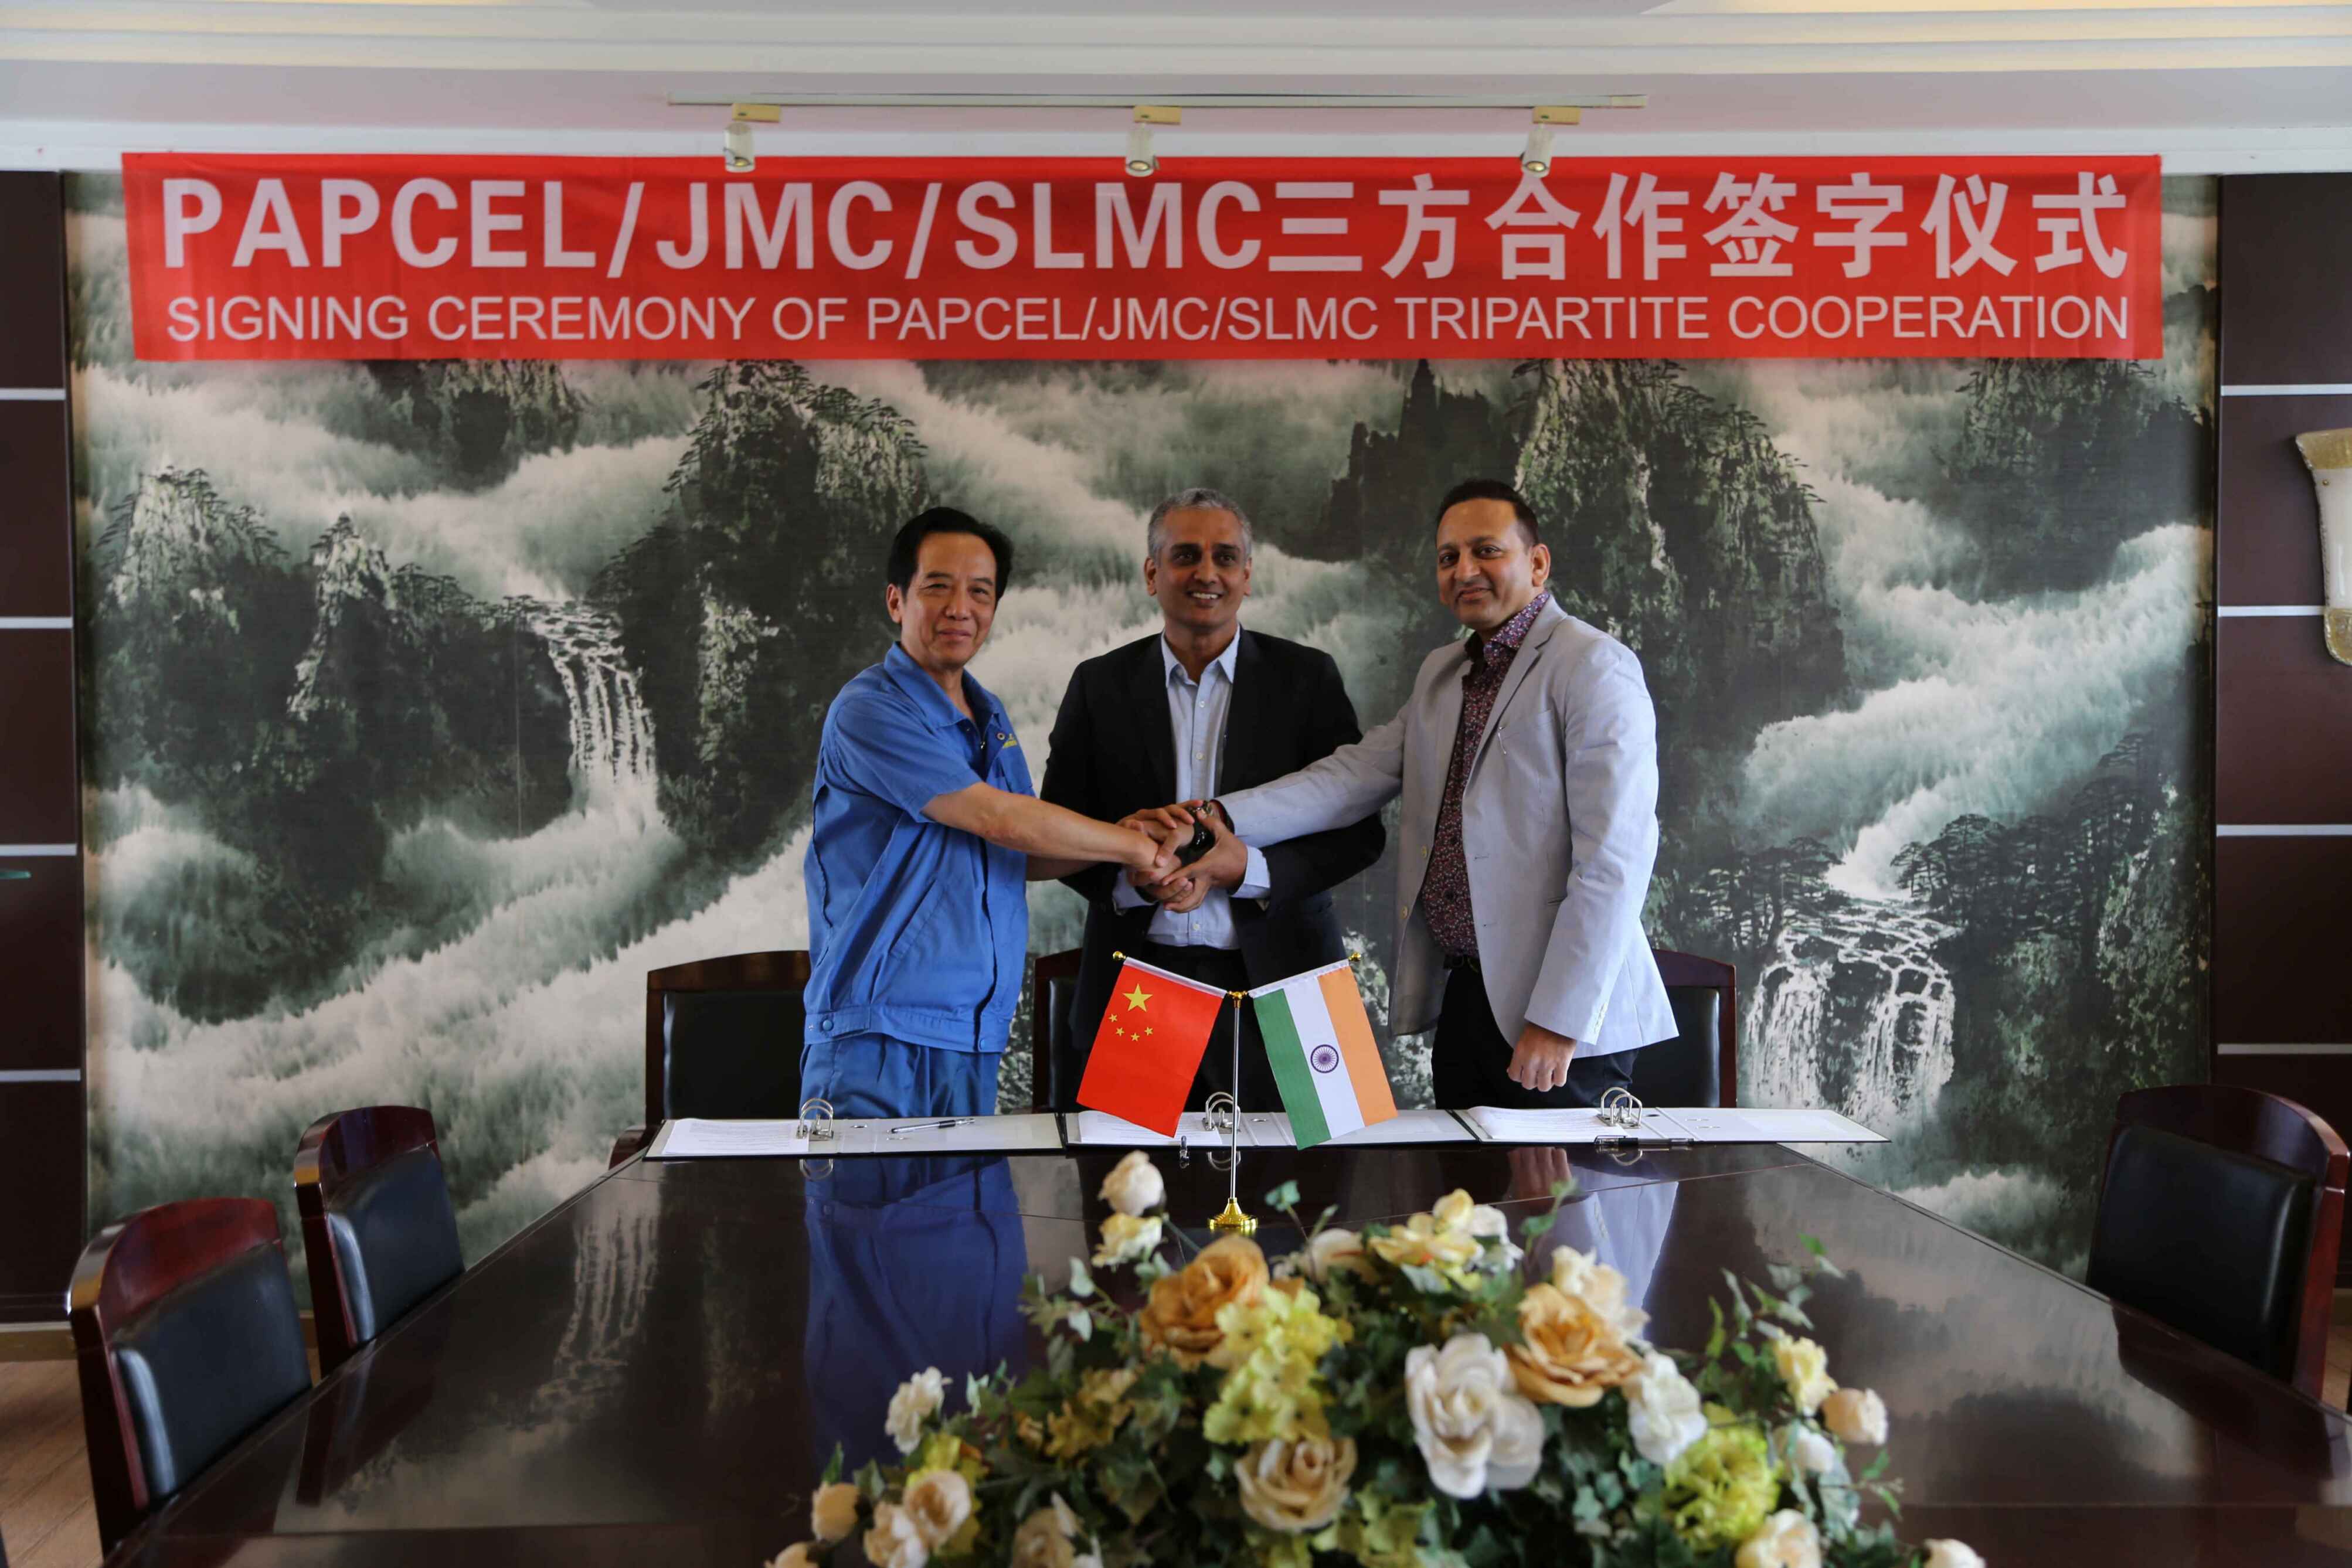 公司与捷克巴赛奥公司、印度JMC公司成功举行三方合作签字仪式